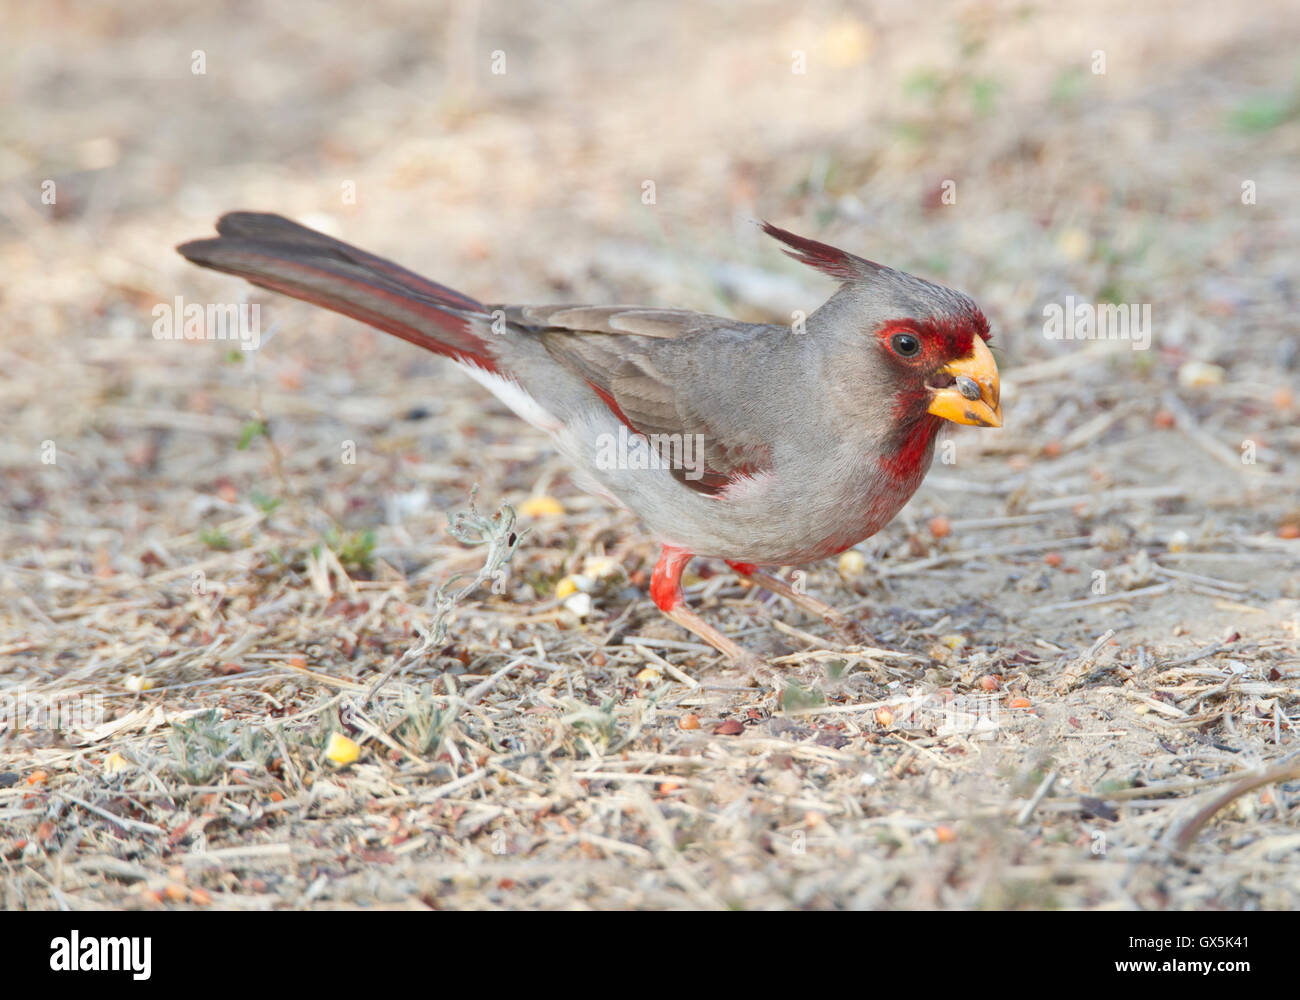 Pyrrhuloxia (Cardinalis sinuatus) feeding on the ground Stock Photo